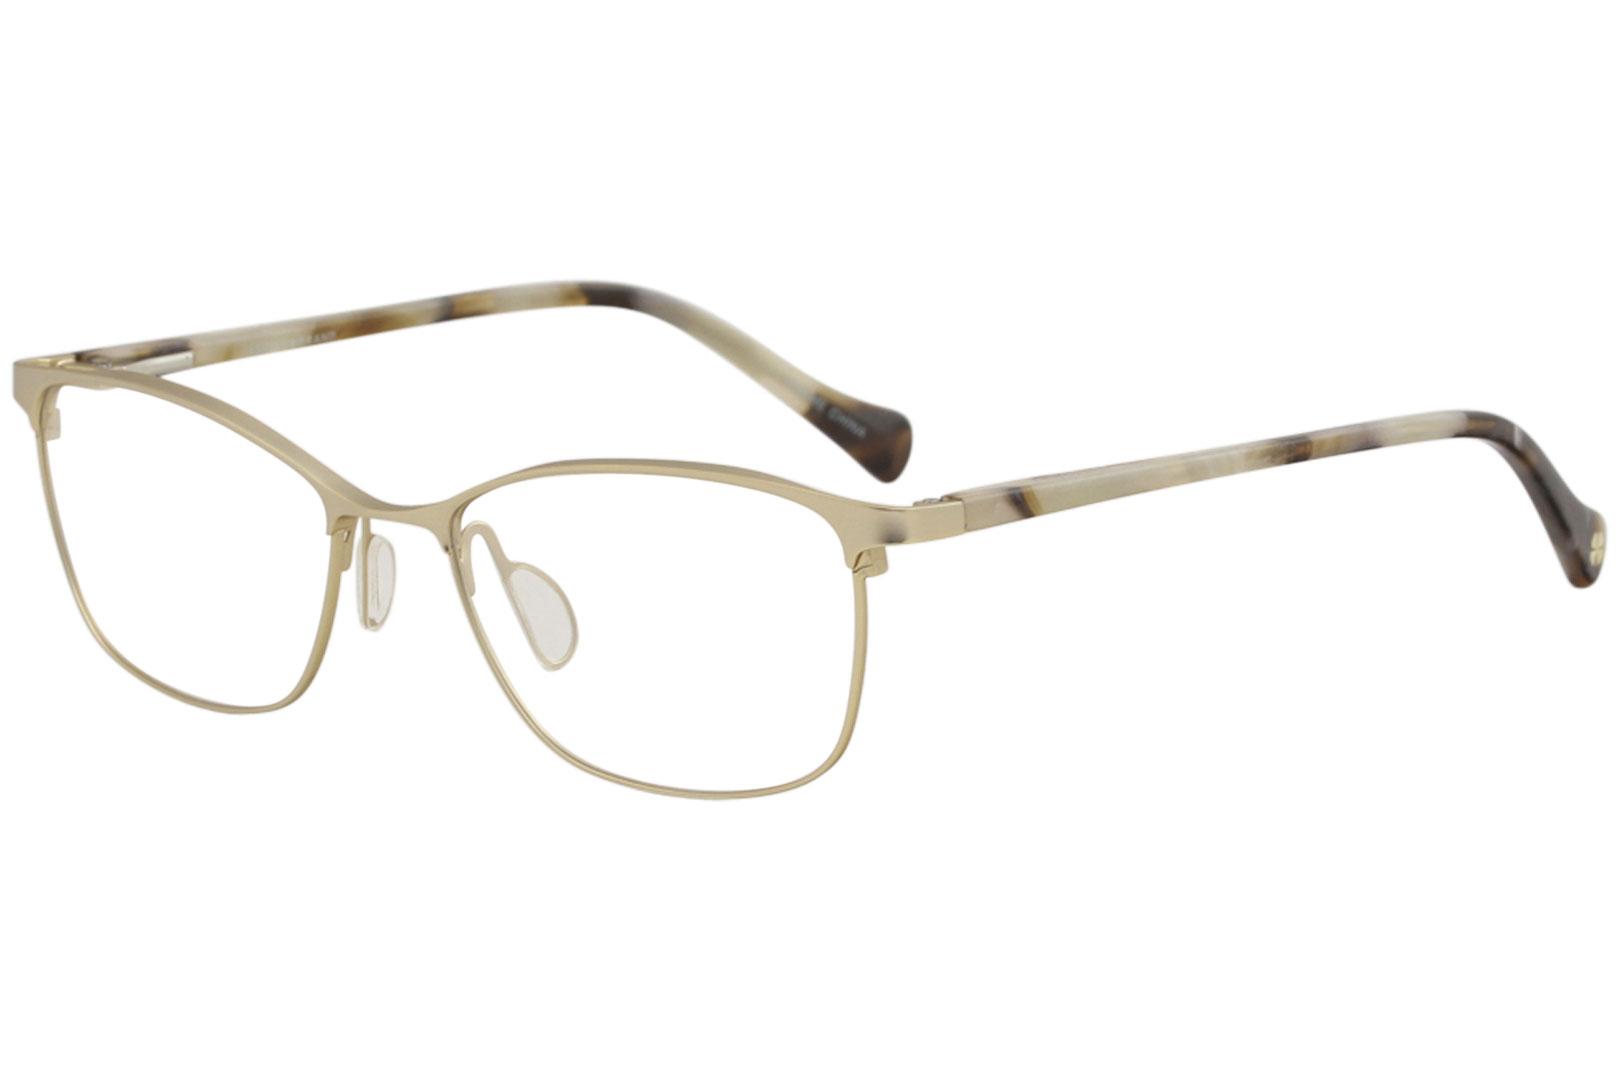 Lucky Brand Women's Eyeglasses D110 D/110 Gold Full Rim Optical Frame 54mm - Gold - Lens 54 Bridge 17 Temple 135mm